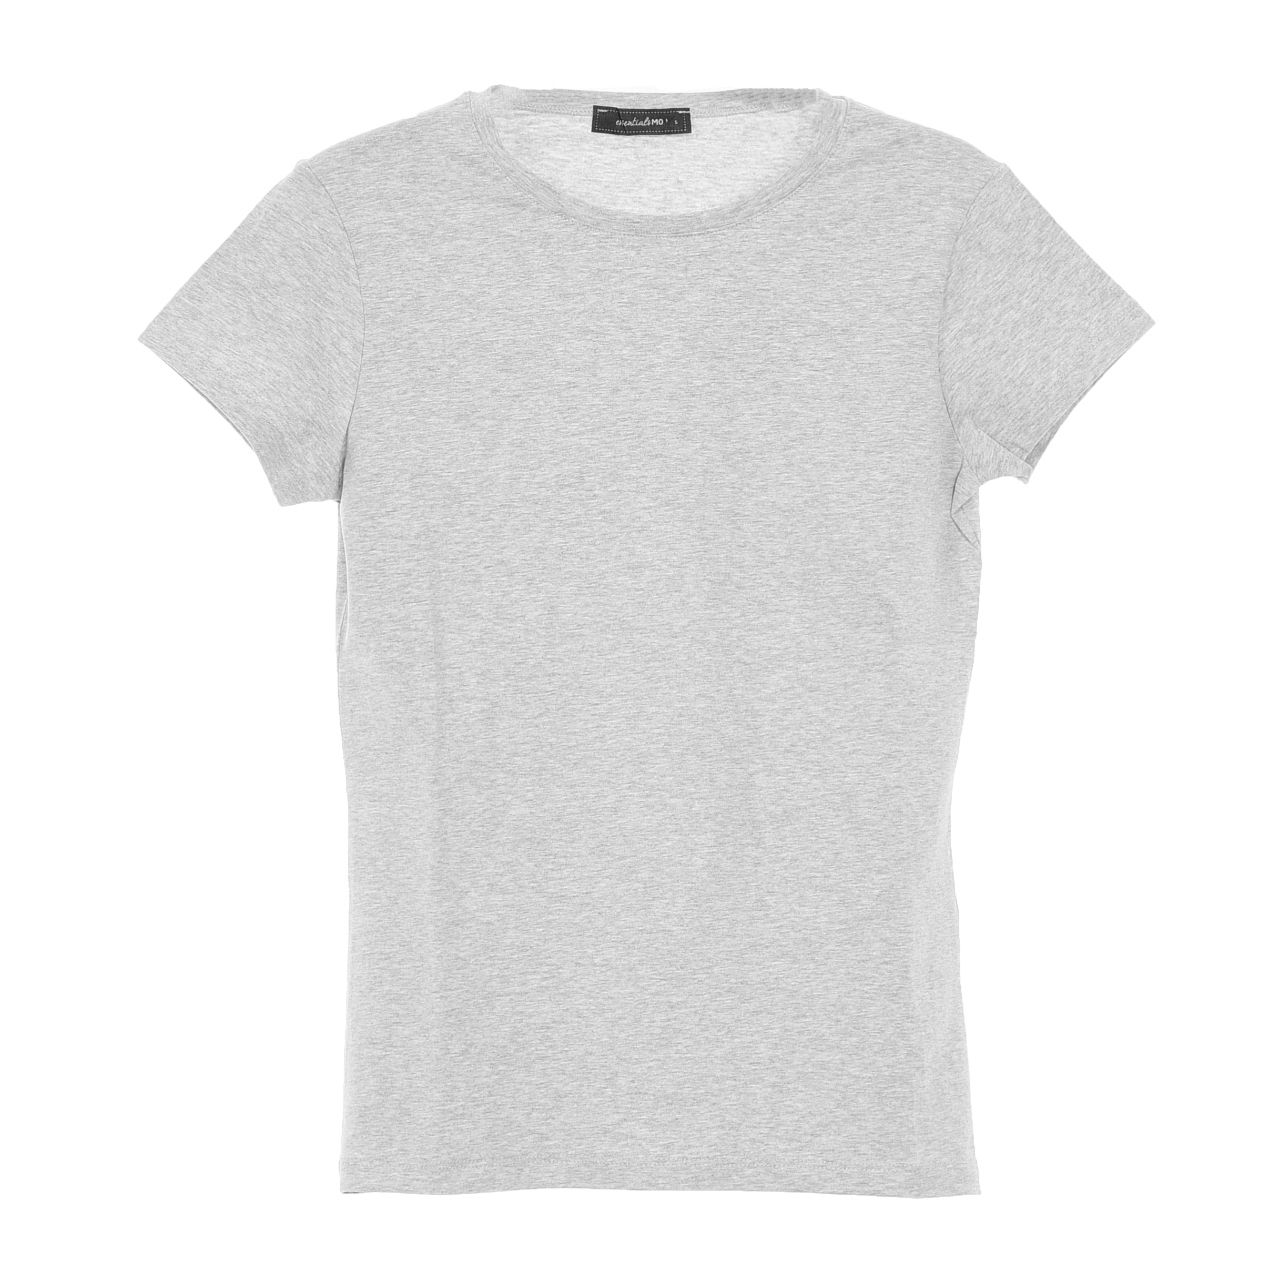 تی شرت آستین کوتاه زنانه مو مدل 4240106 -  - 1